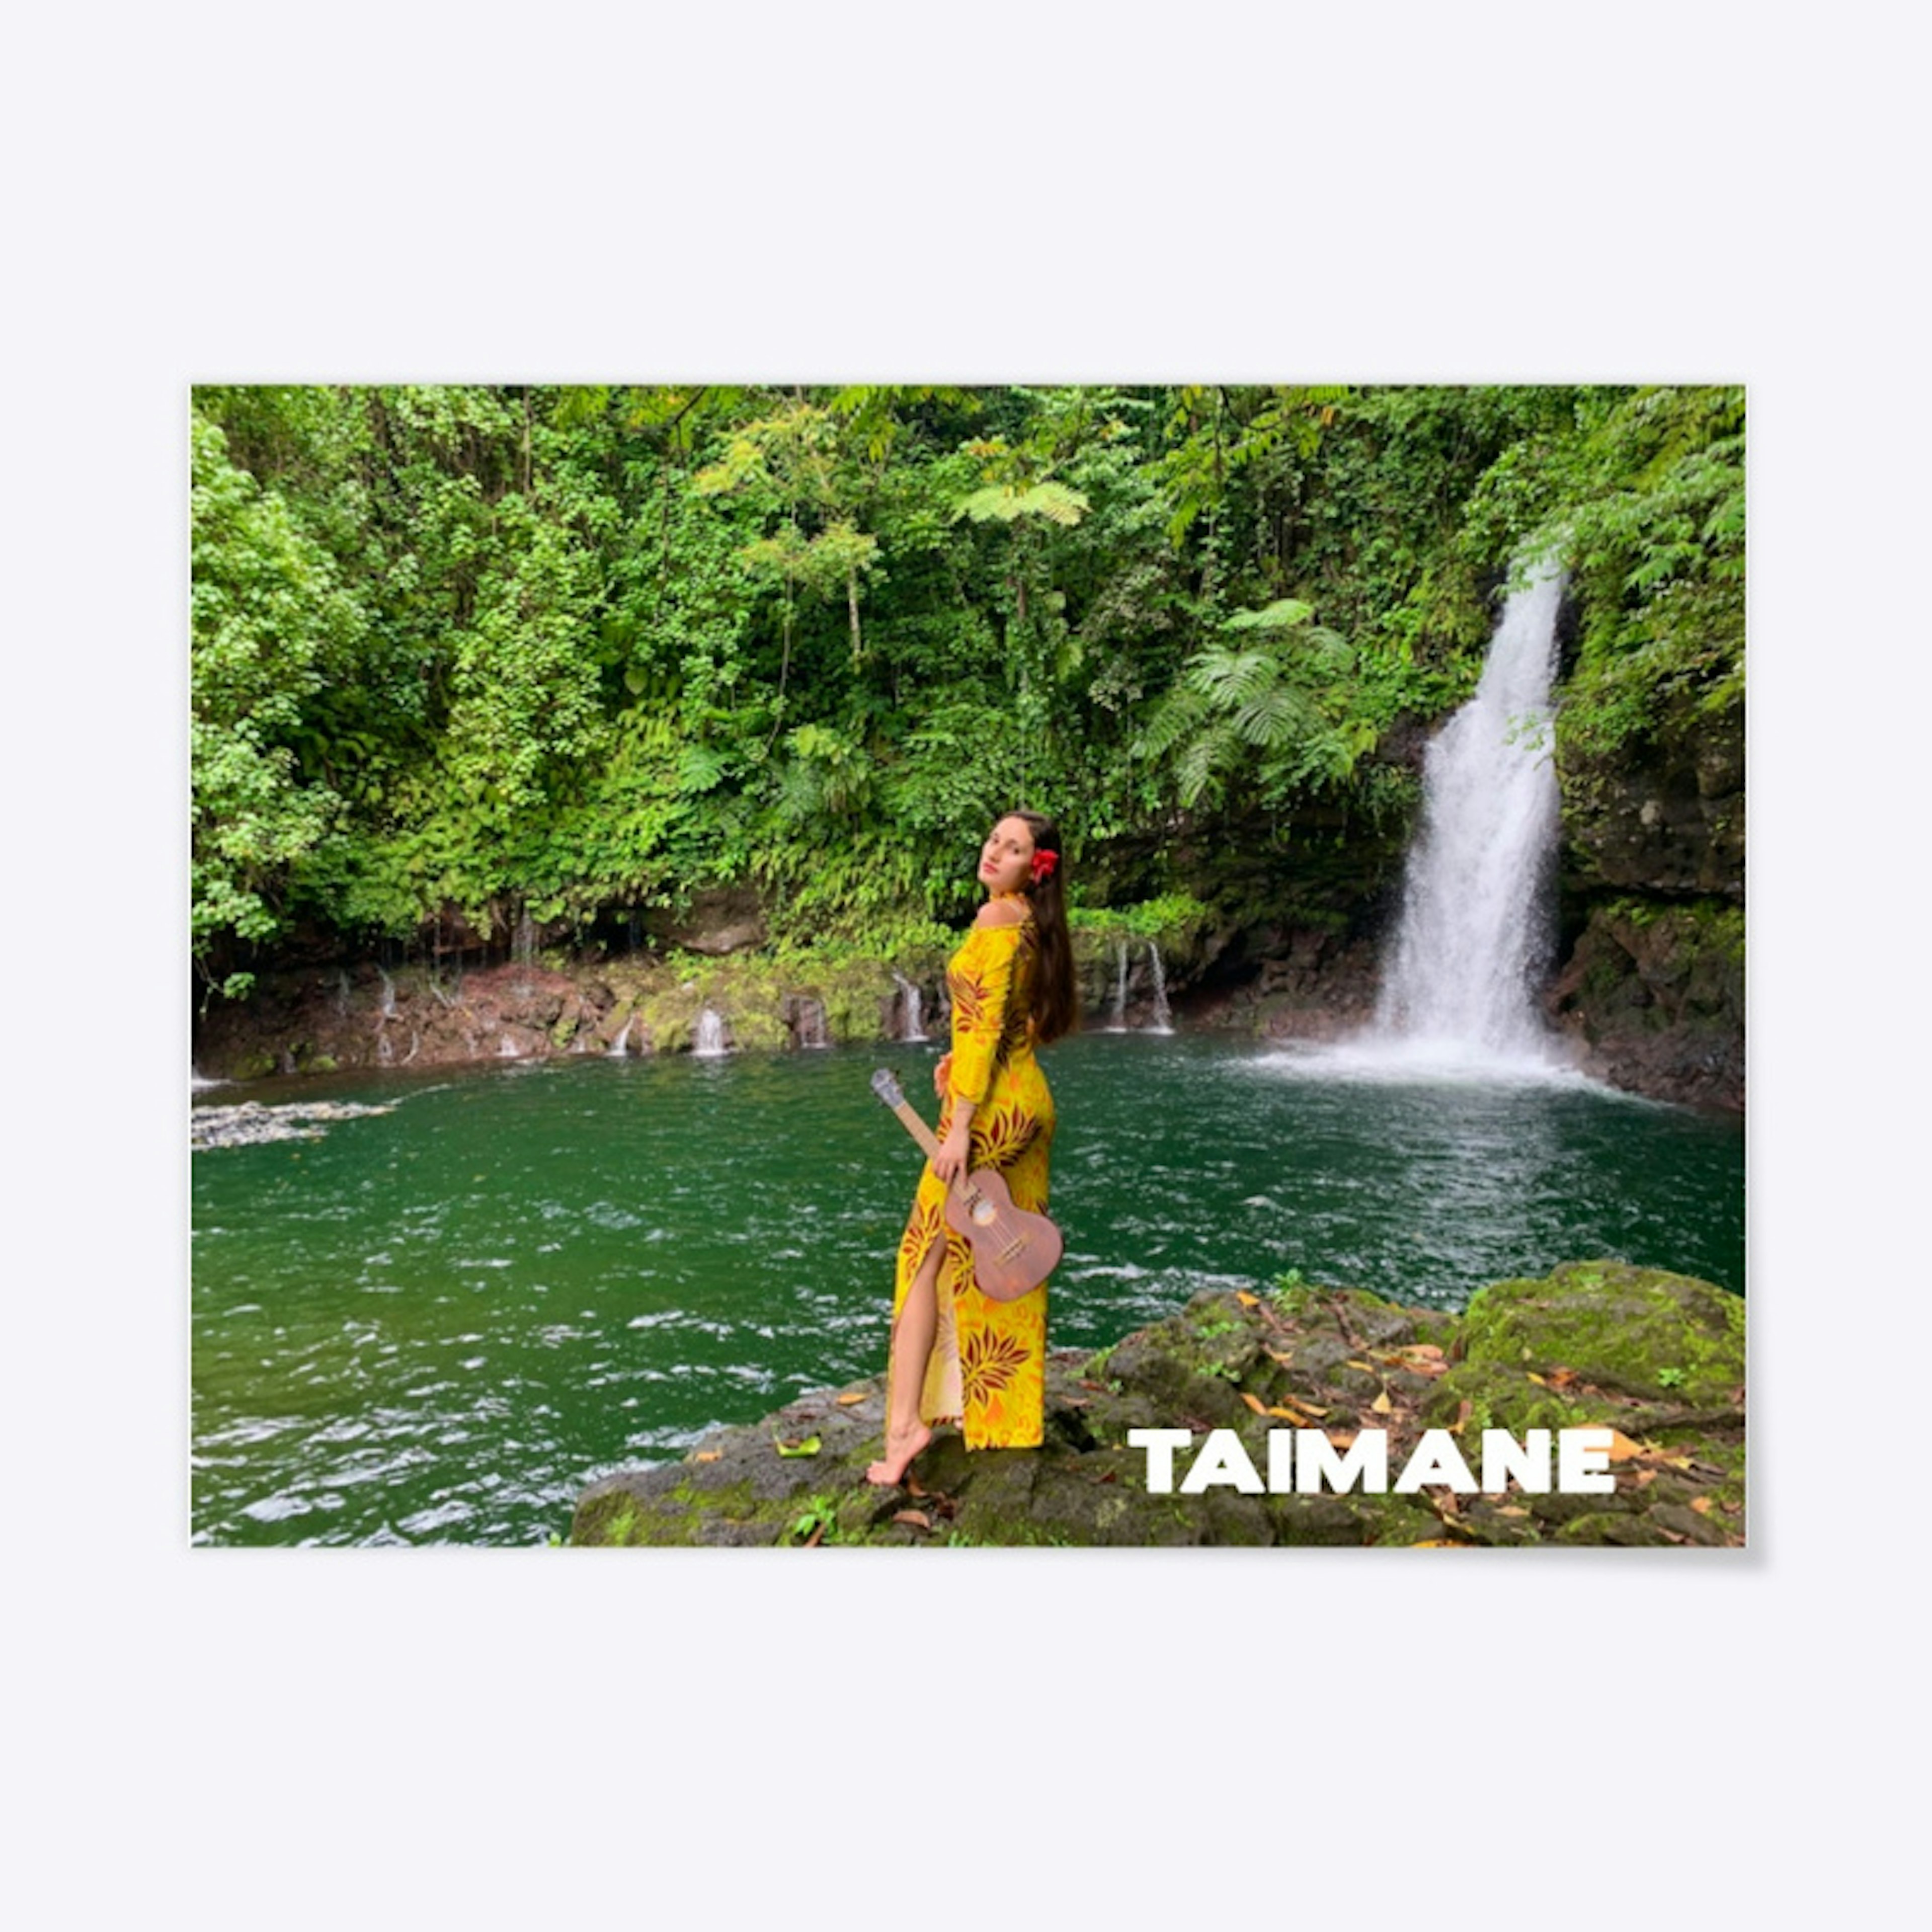 Taimane - Poster 1